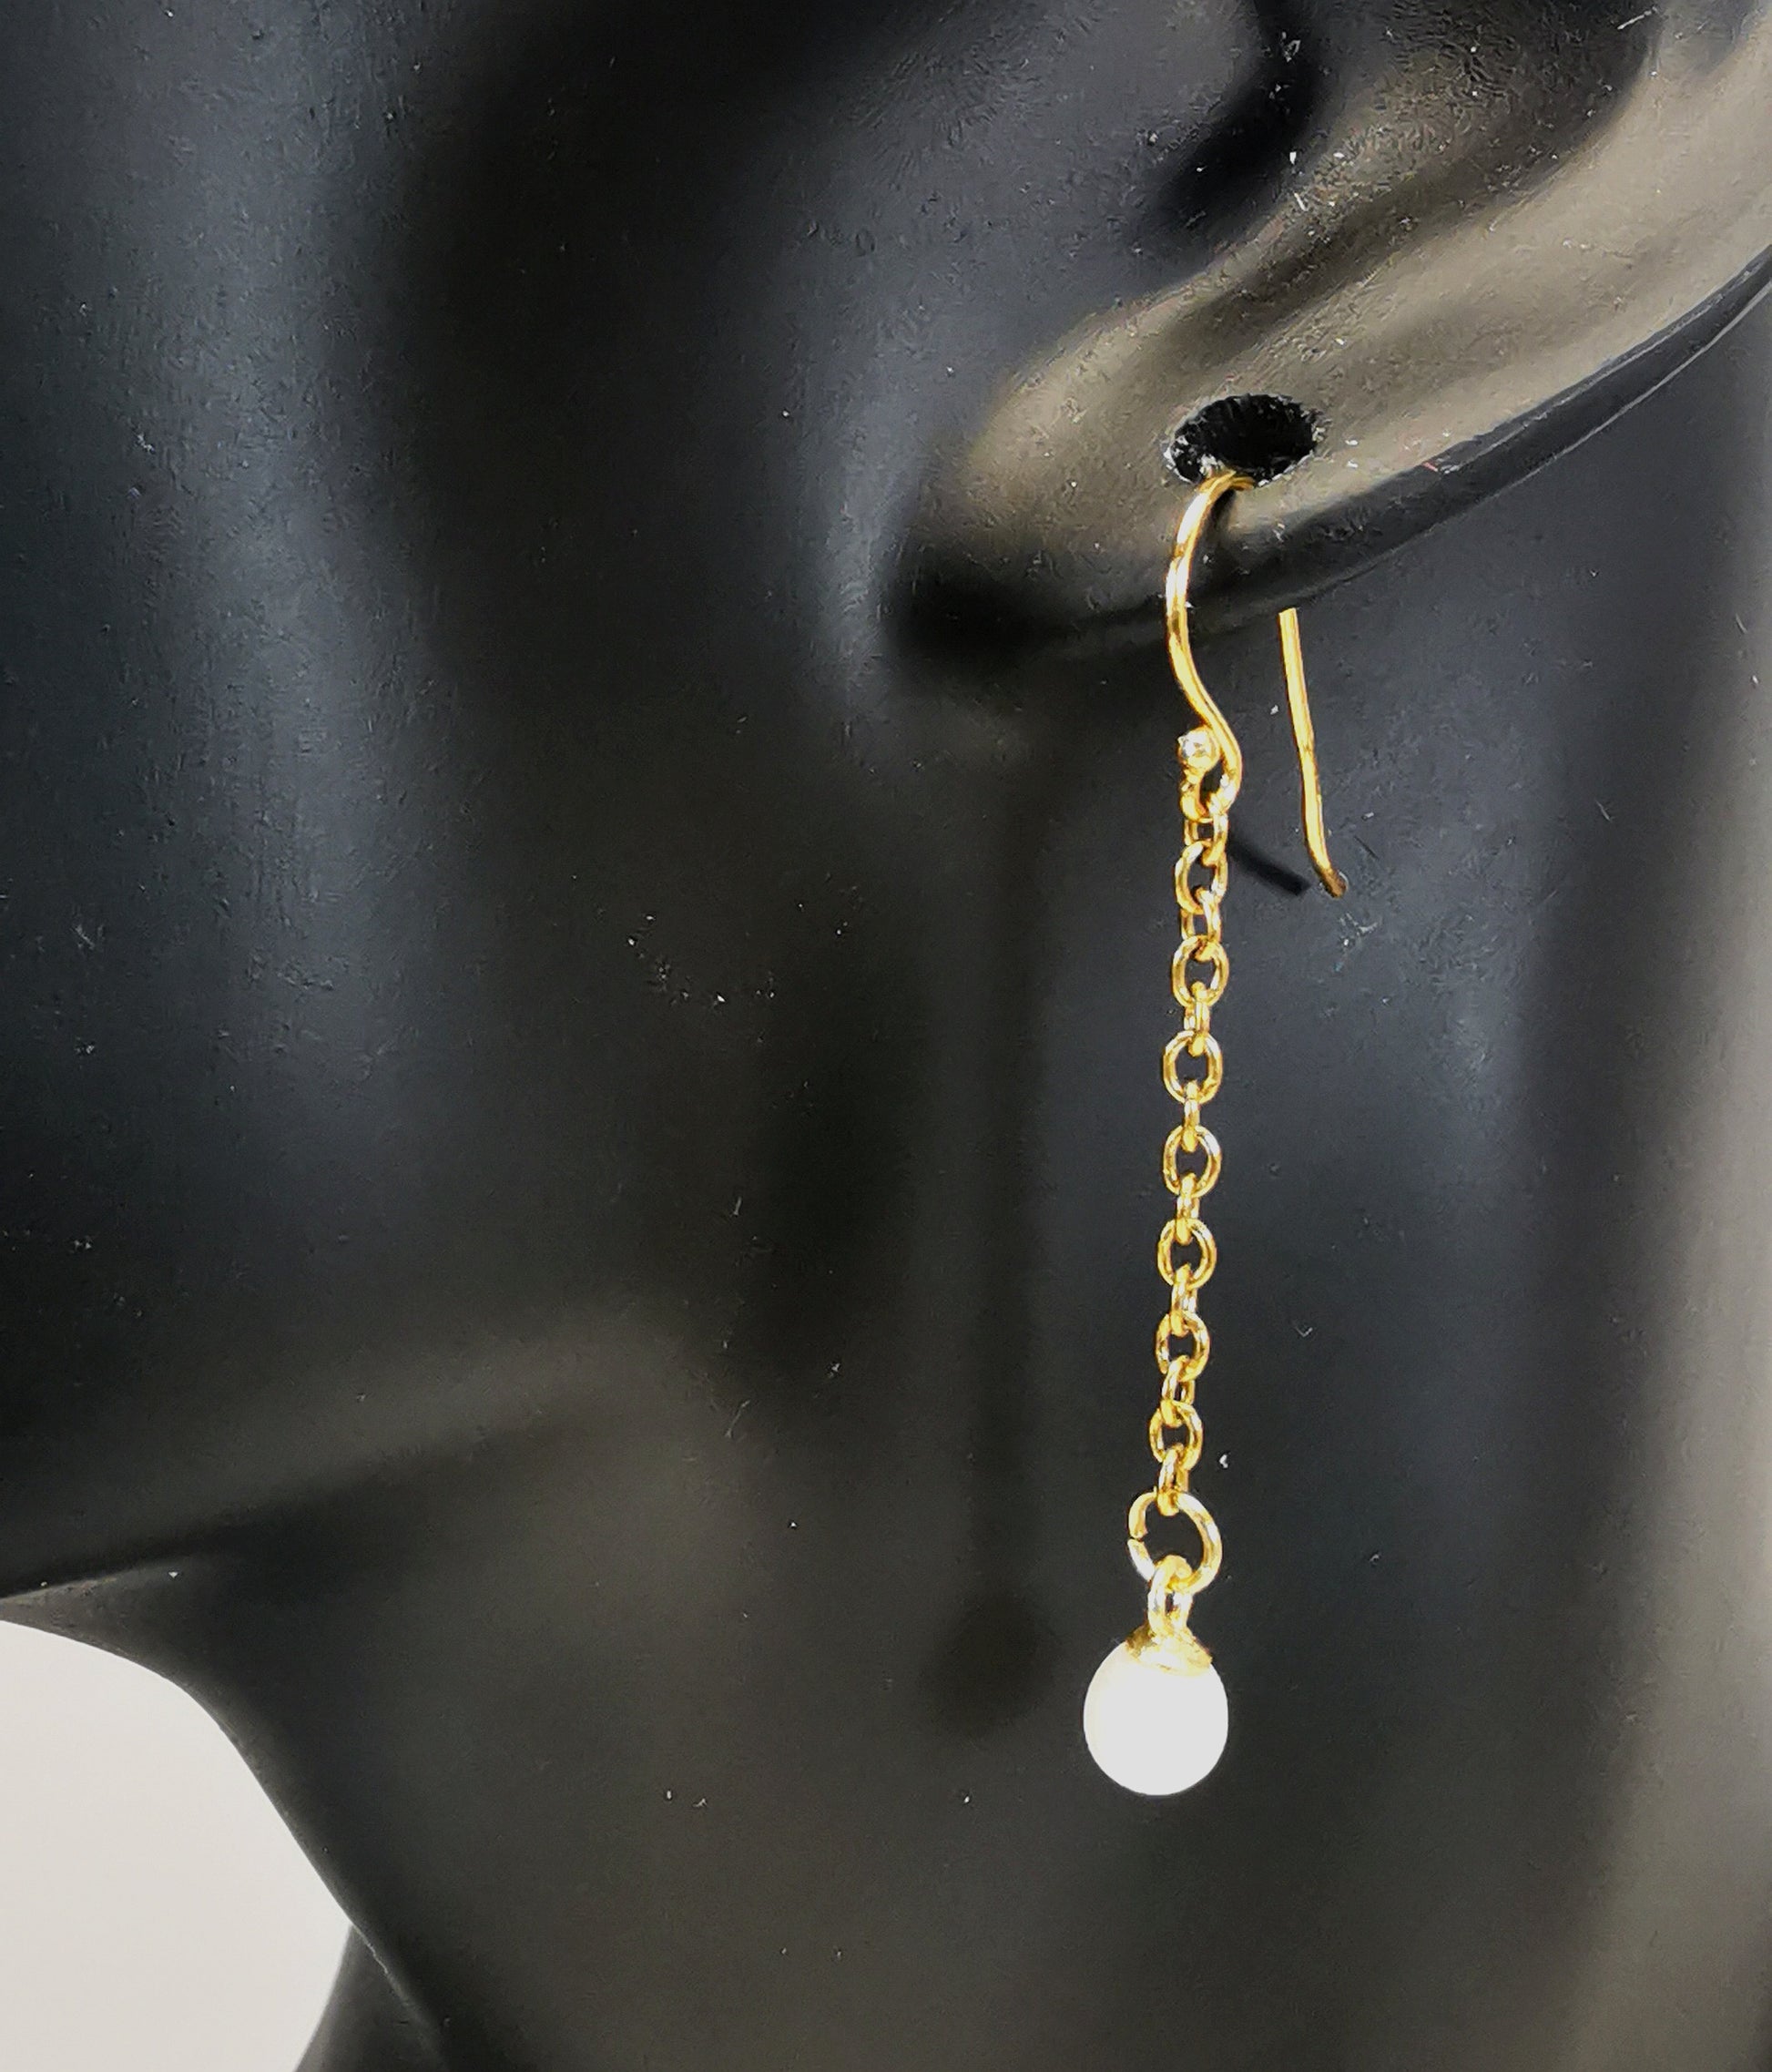 Boucles d'oreilles perles de culture blanches rondes 5mm sur pendants et chaînes plaqués or. Représentées par une boucle accrochée à une oreille de mannequin buste noir. Vue en gros plan de coté.